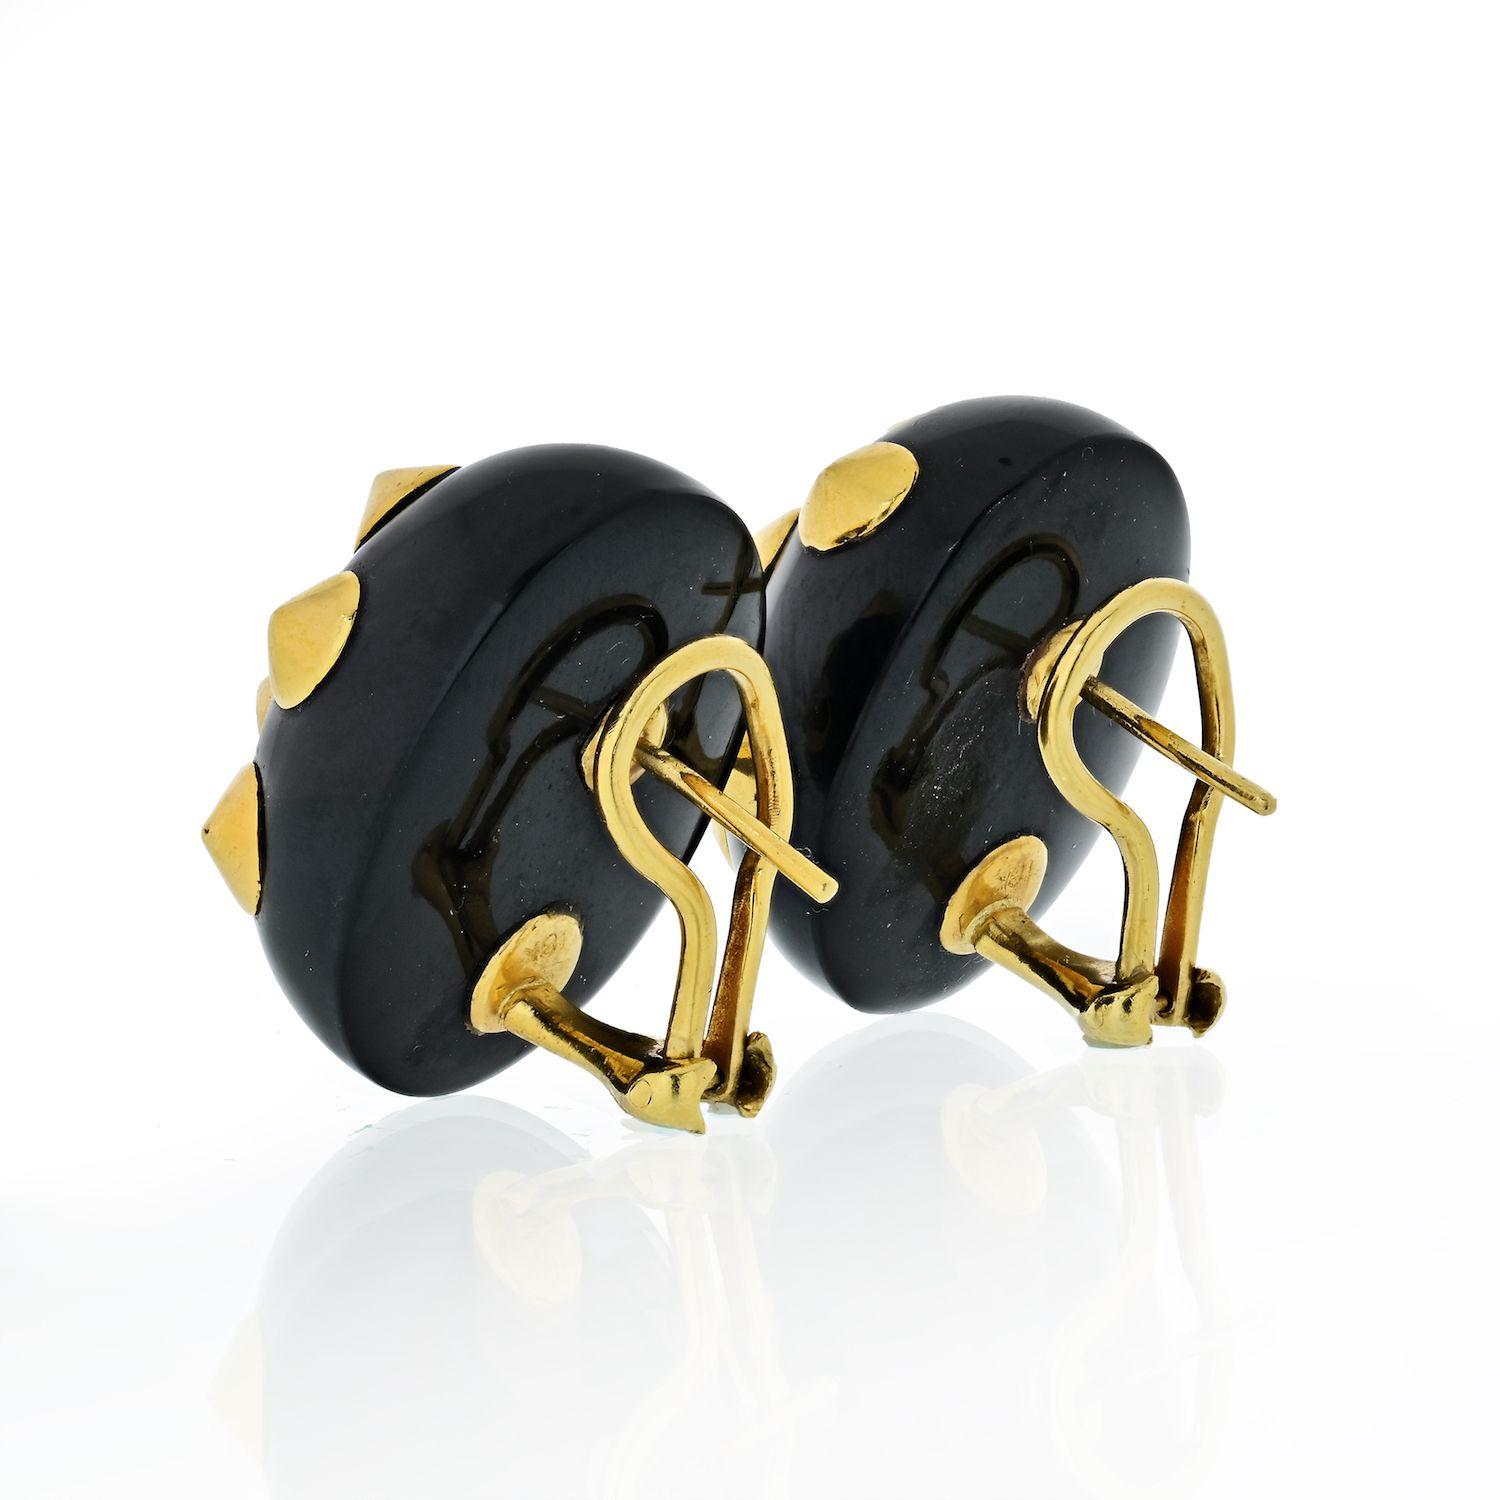 Ein ikonisches Paar Ohrringe aus 18-karätigem Gelbgold, verziert mit schwarzer Jade. Die Ohrringe wurden von der berühmten Designerin Angela Cummings entworfen, messen 25 mm x 21 mm und wiegen 26 Gramm.
Pfostenhalterung für gepiercte Ohren. 
Jedes